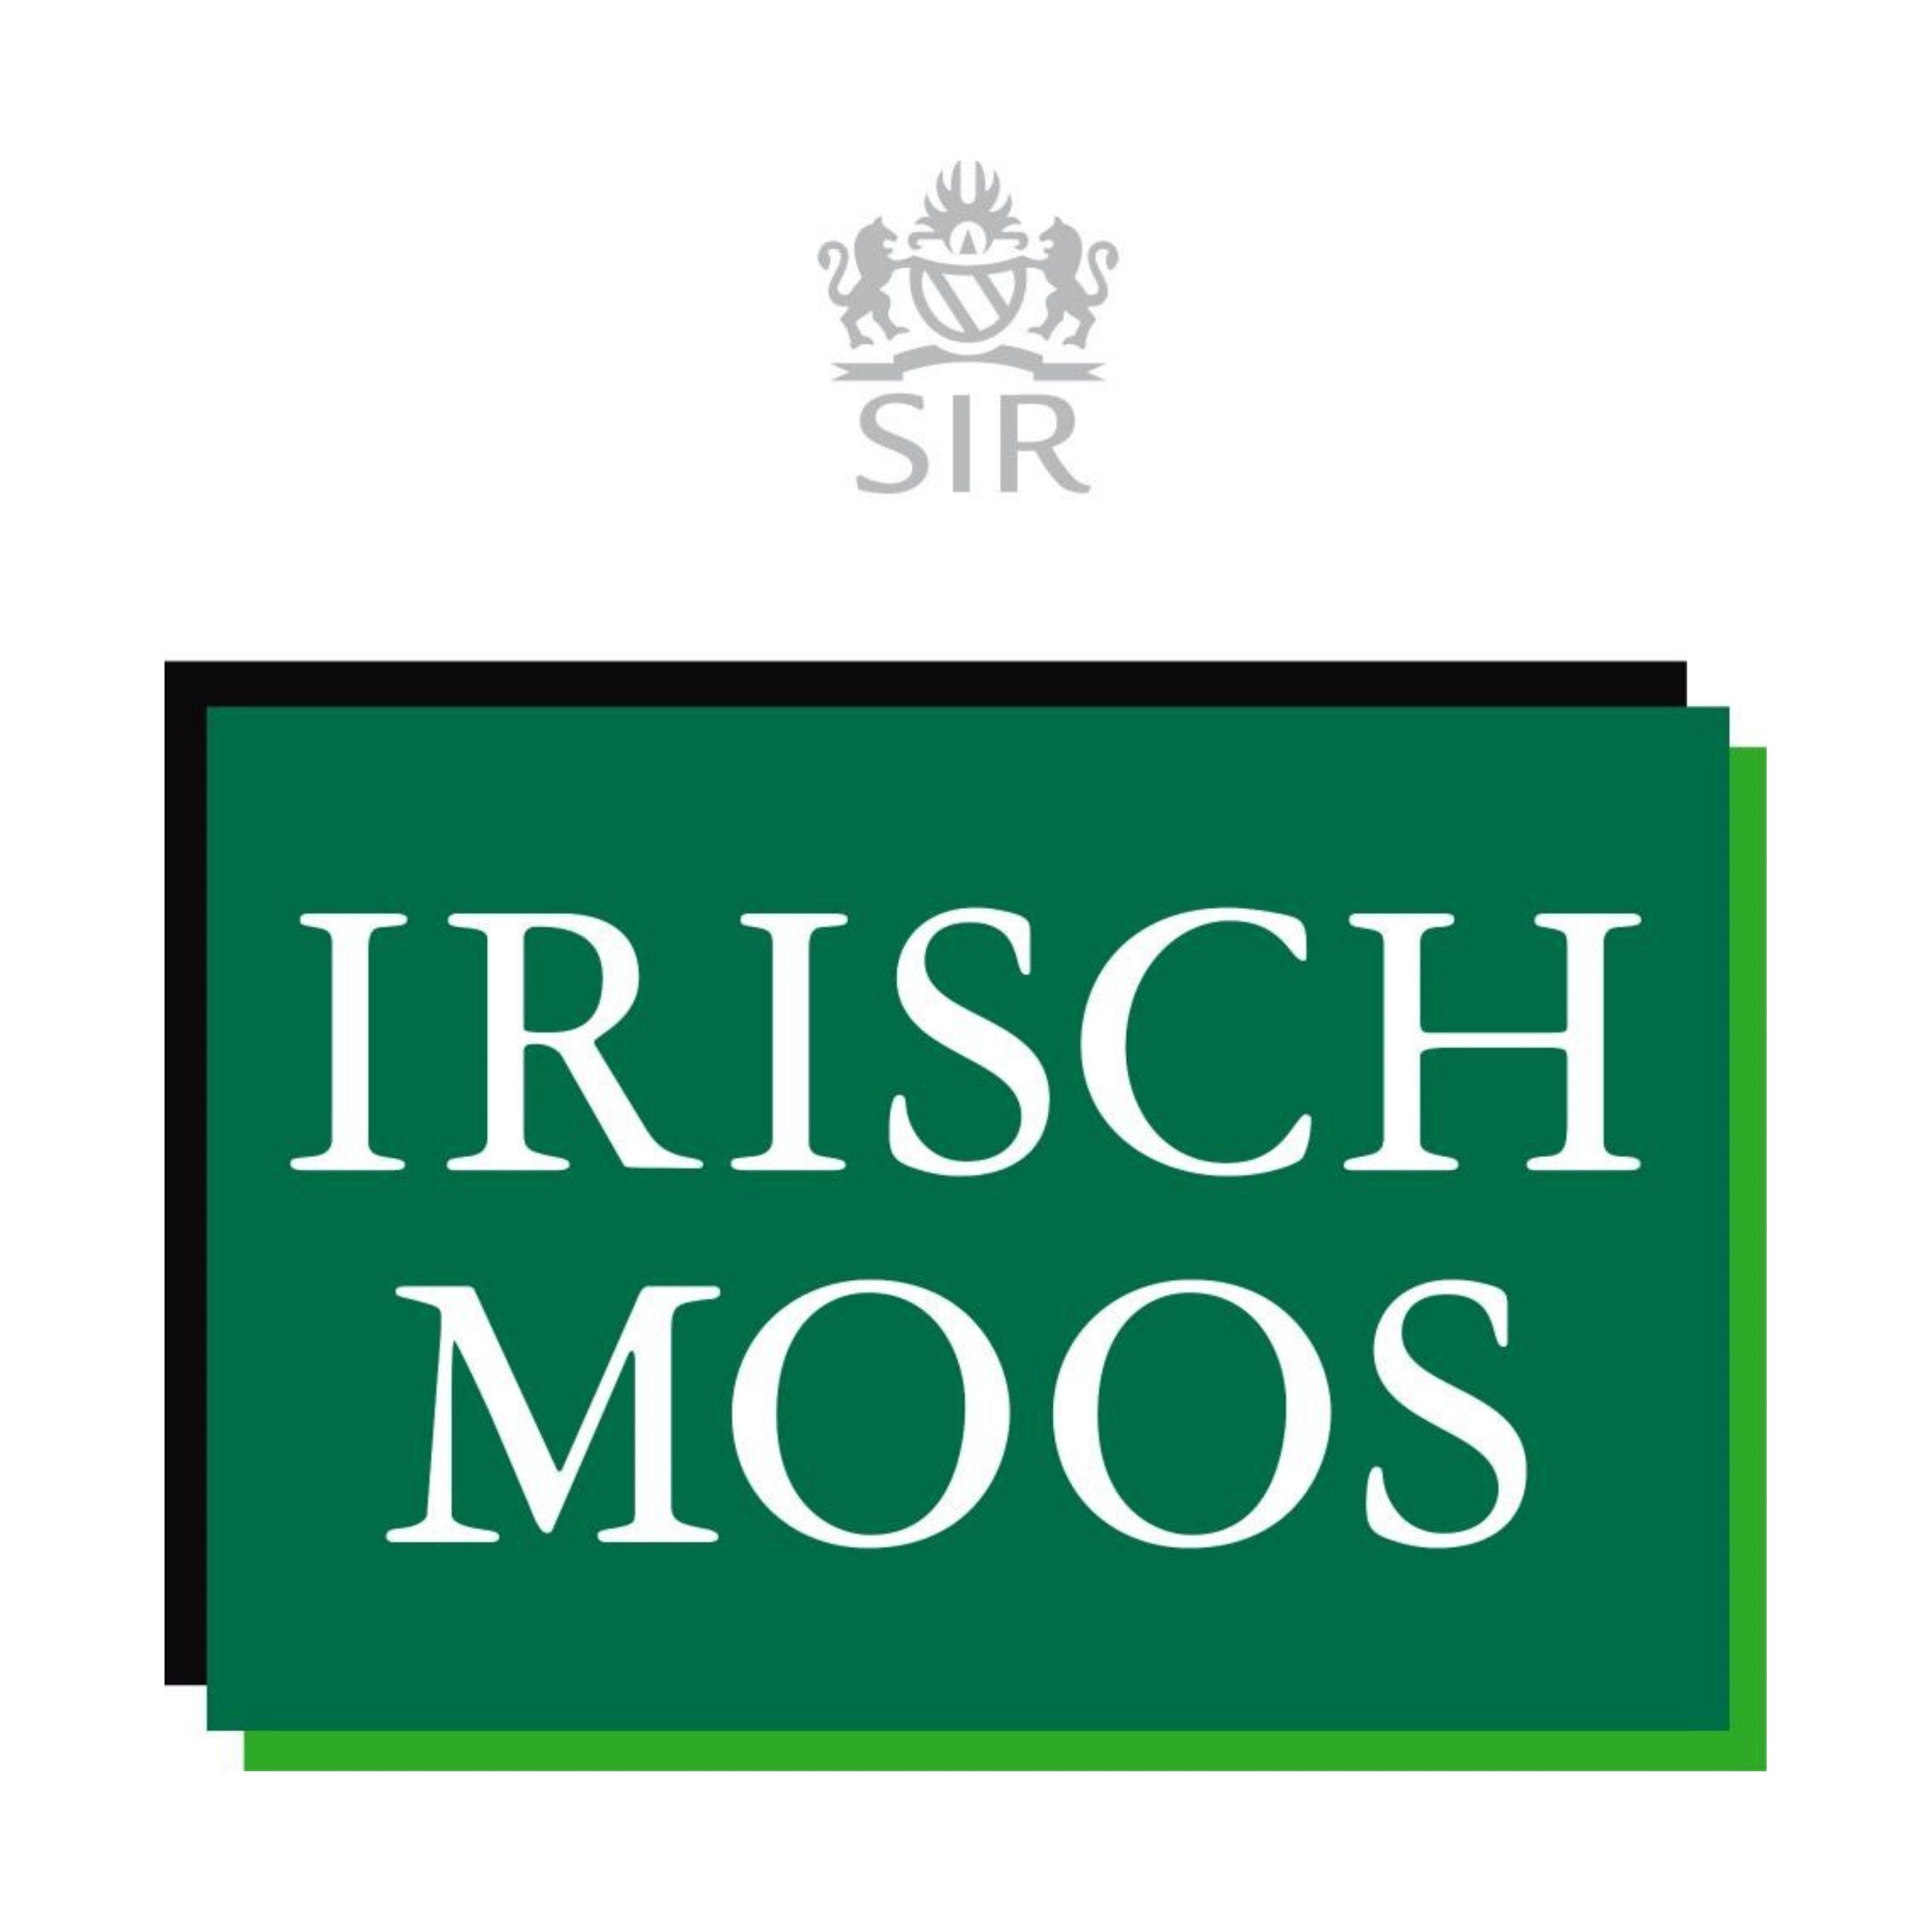 Shave Irisch Moos IRISCH 150 After Sir Lotion ml SIR MOOS Gesichts-Reinigungslotion